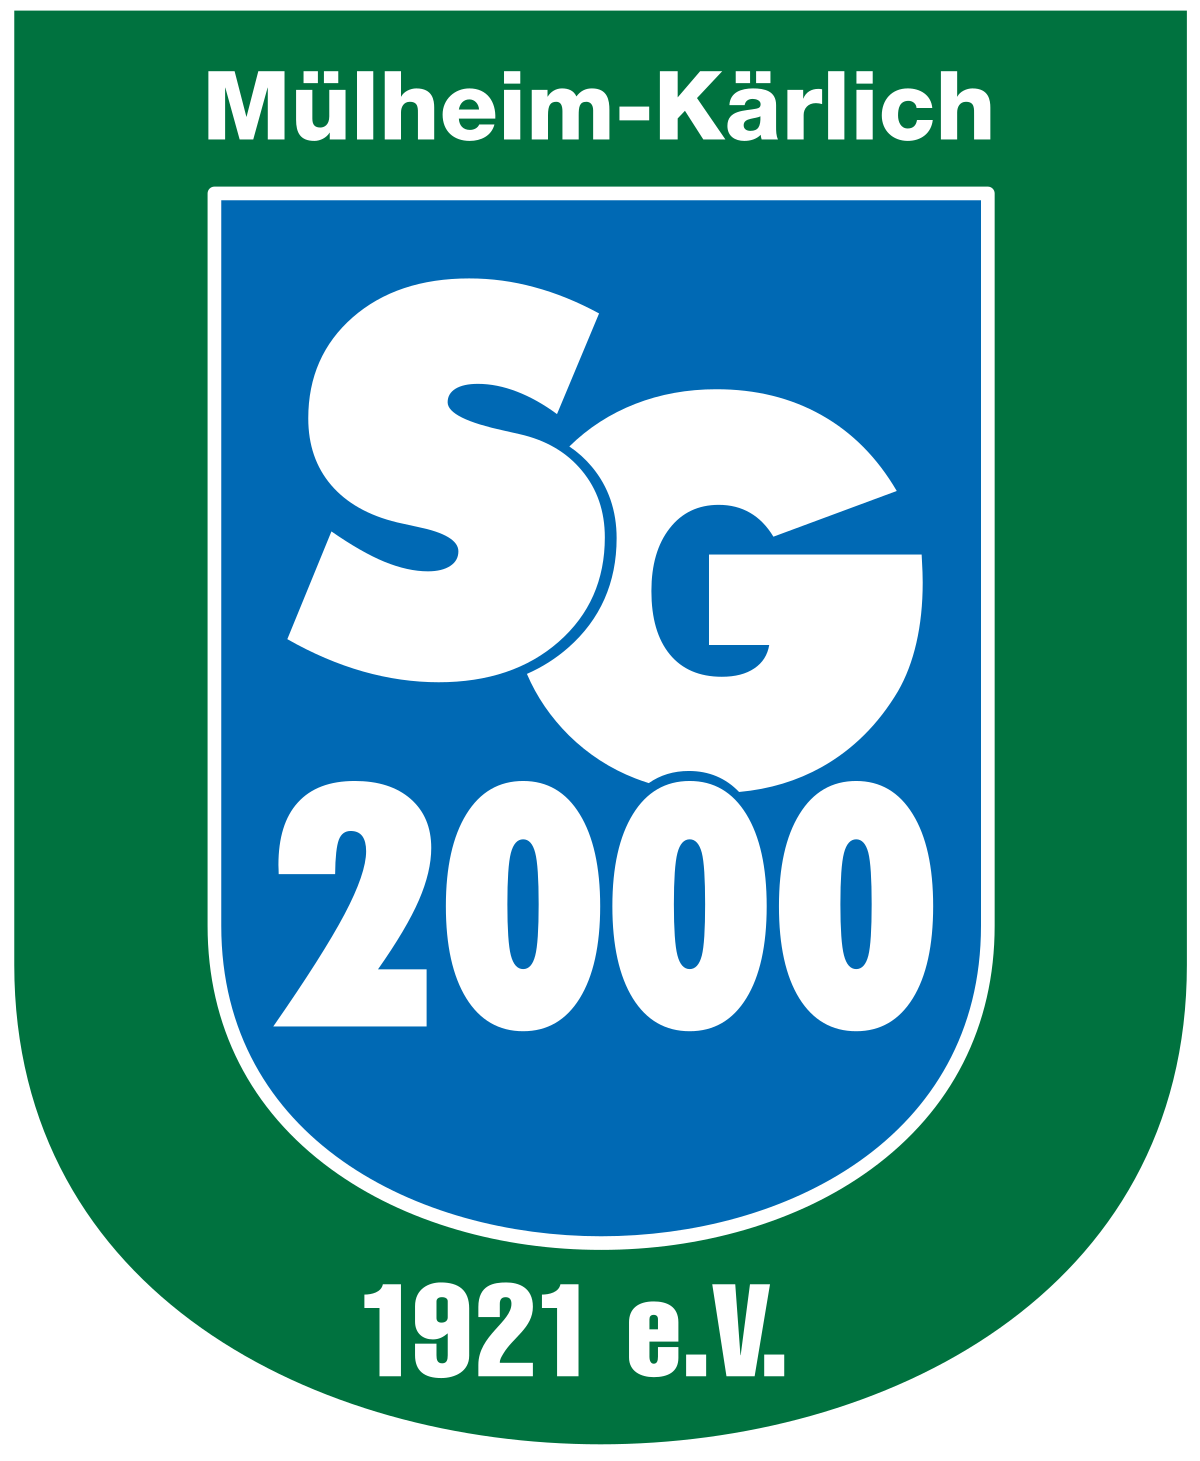 Wappen ehemals SG 2000 Mülheim-Kärlich